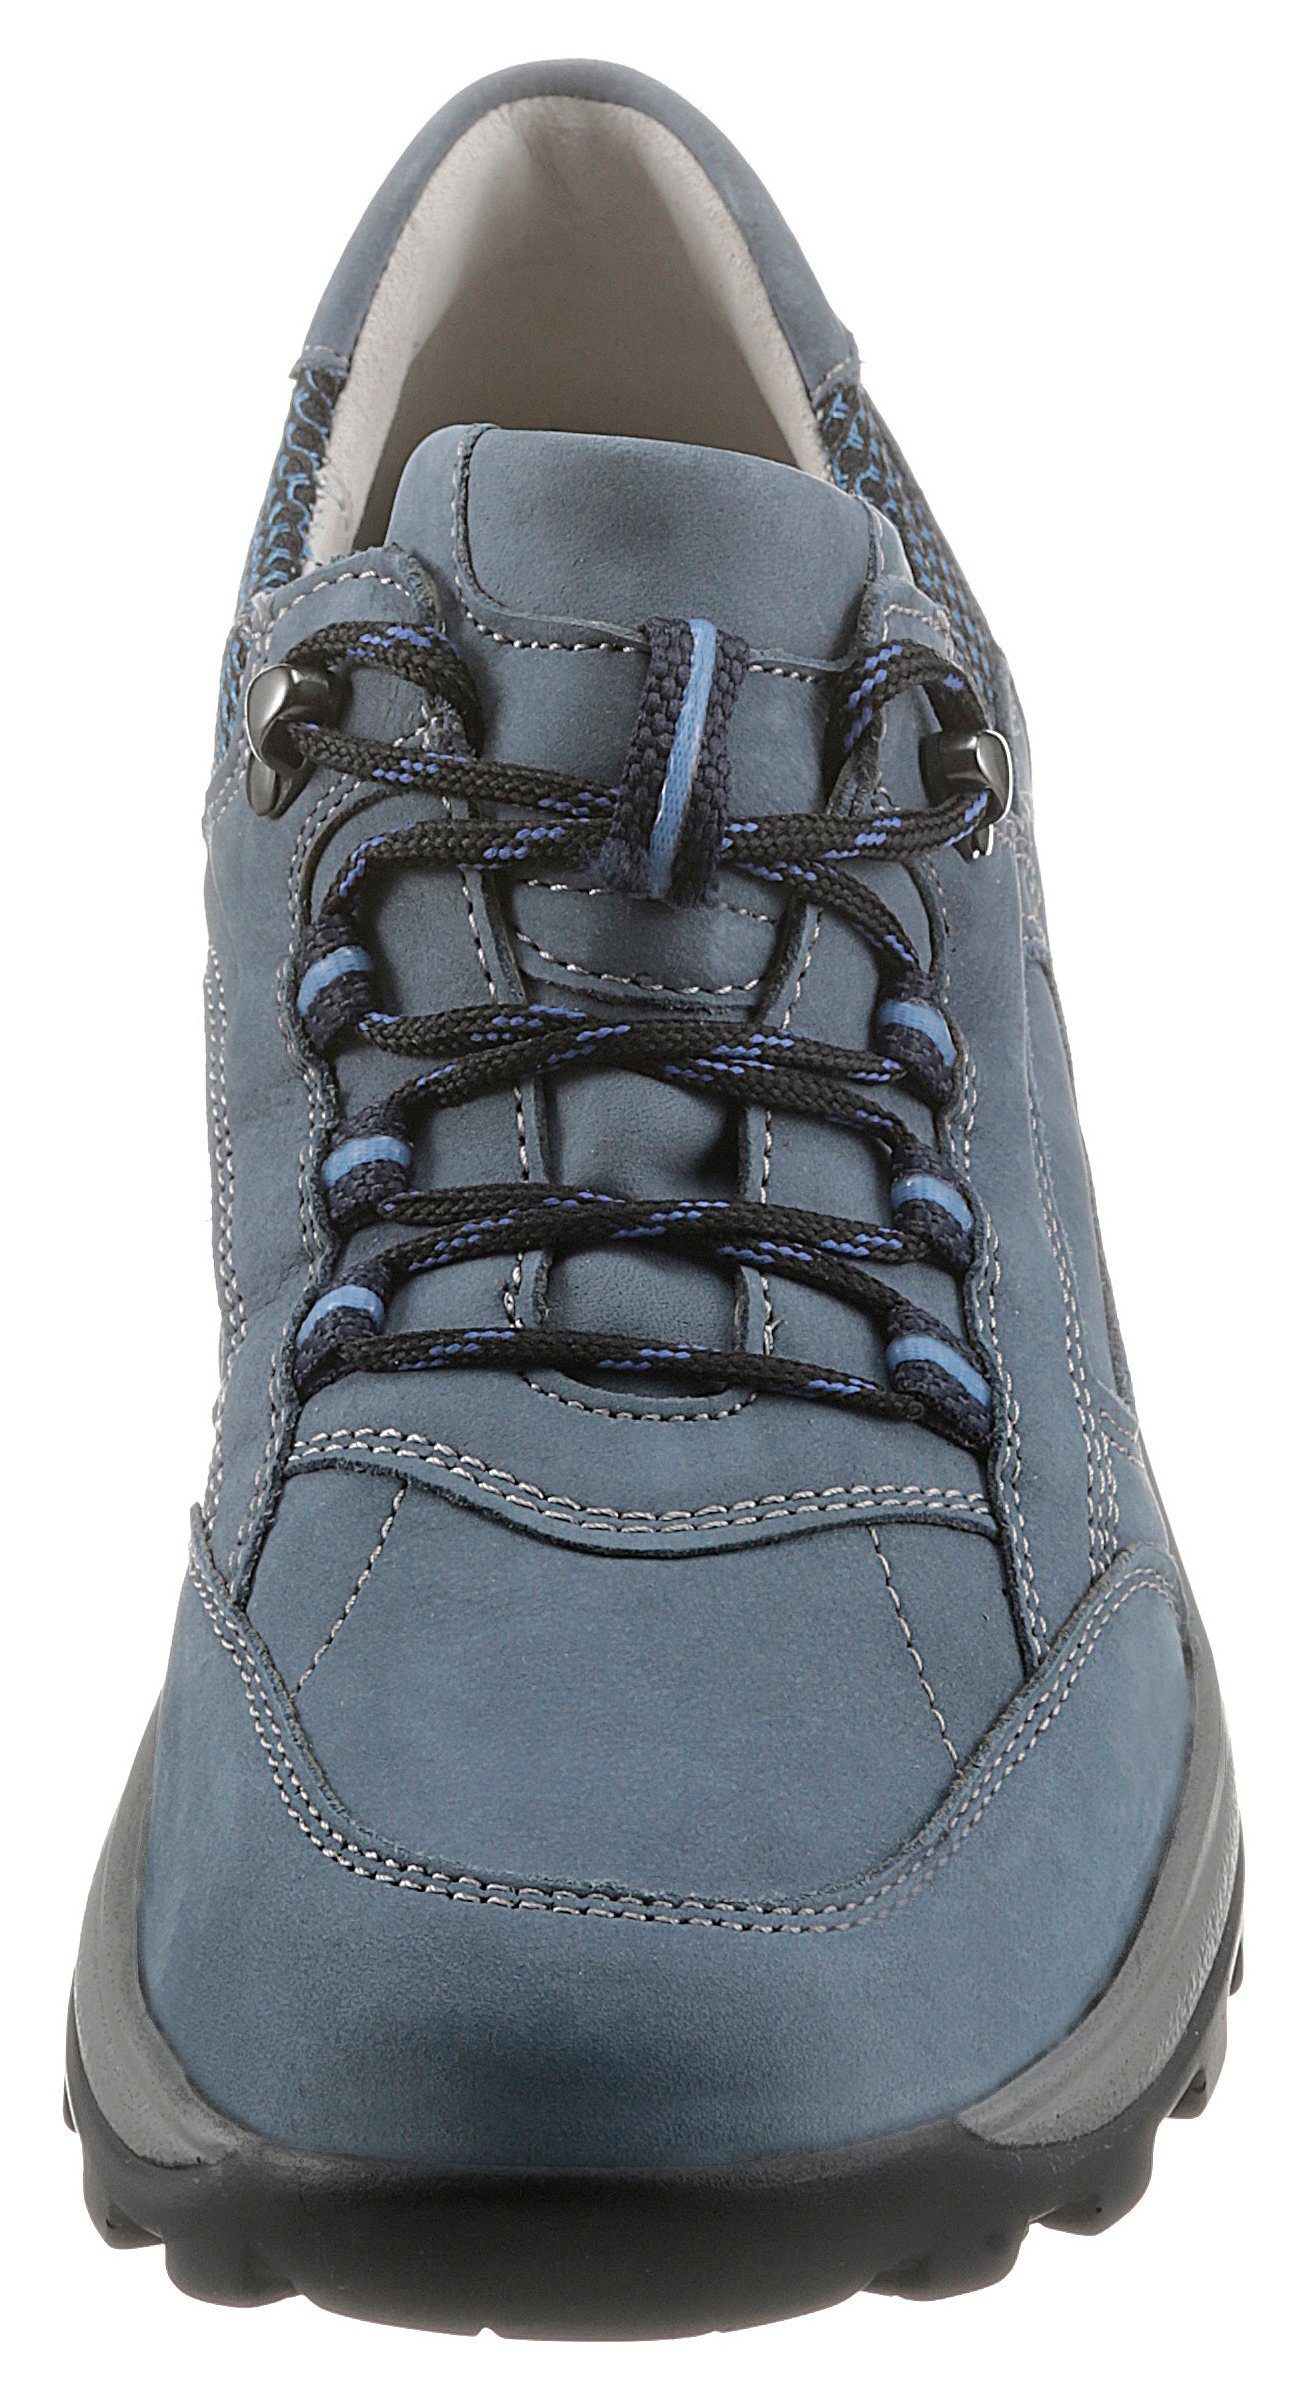 Waldläufer HOLLY Schnürschuh mit herausnehmbarem Fußbett jeansblau-kombiniert